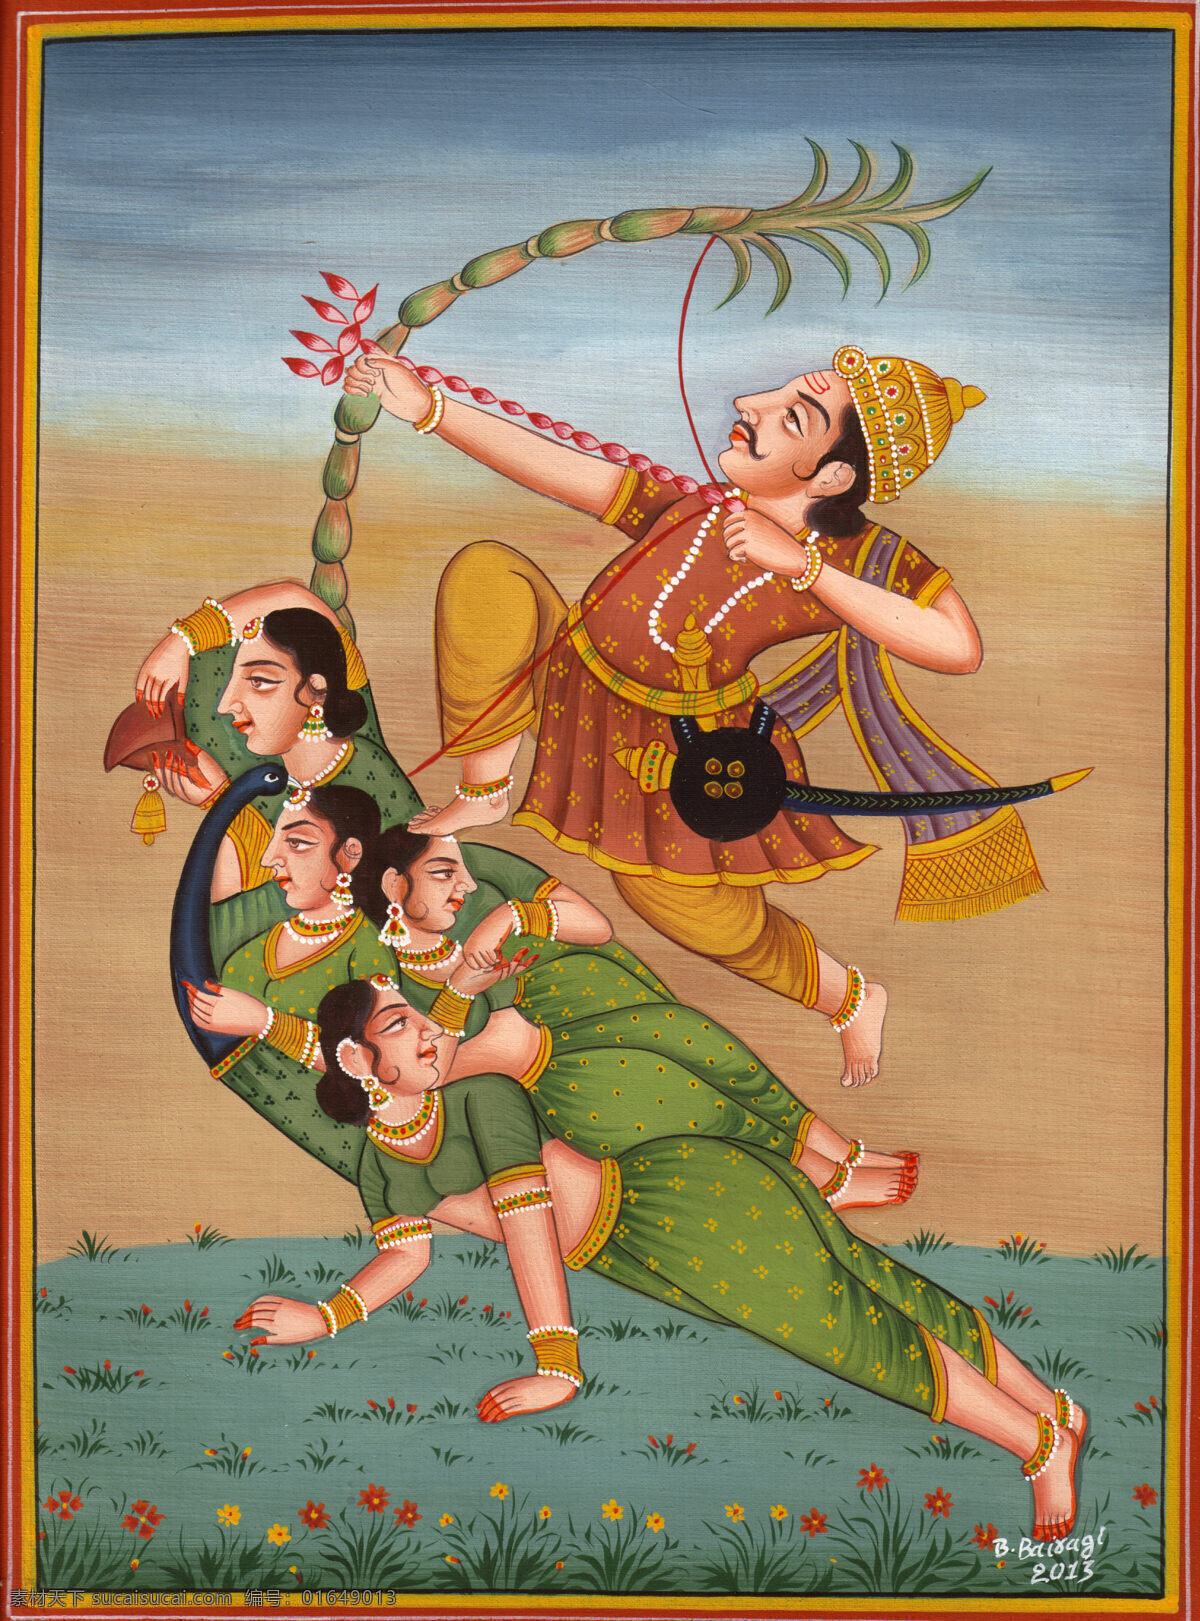 印度人物 射箭 人物 手绘 宗教艺术 文化艺术 传统文化